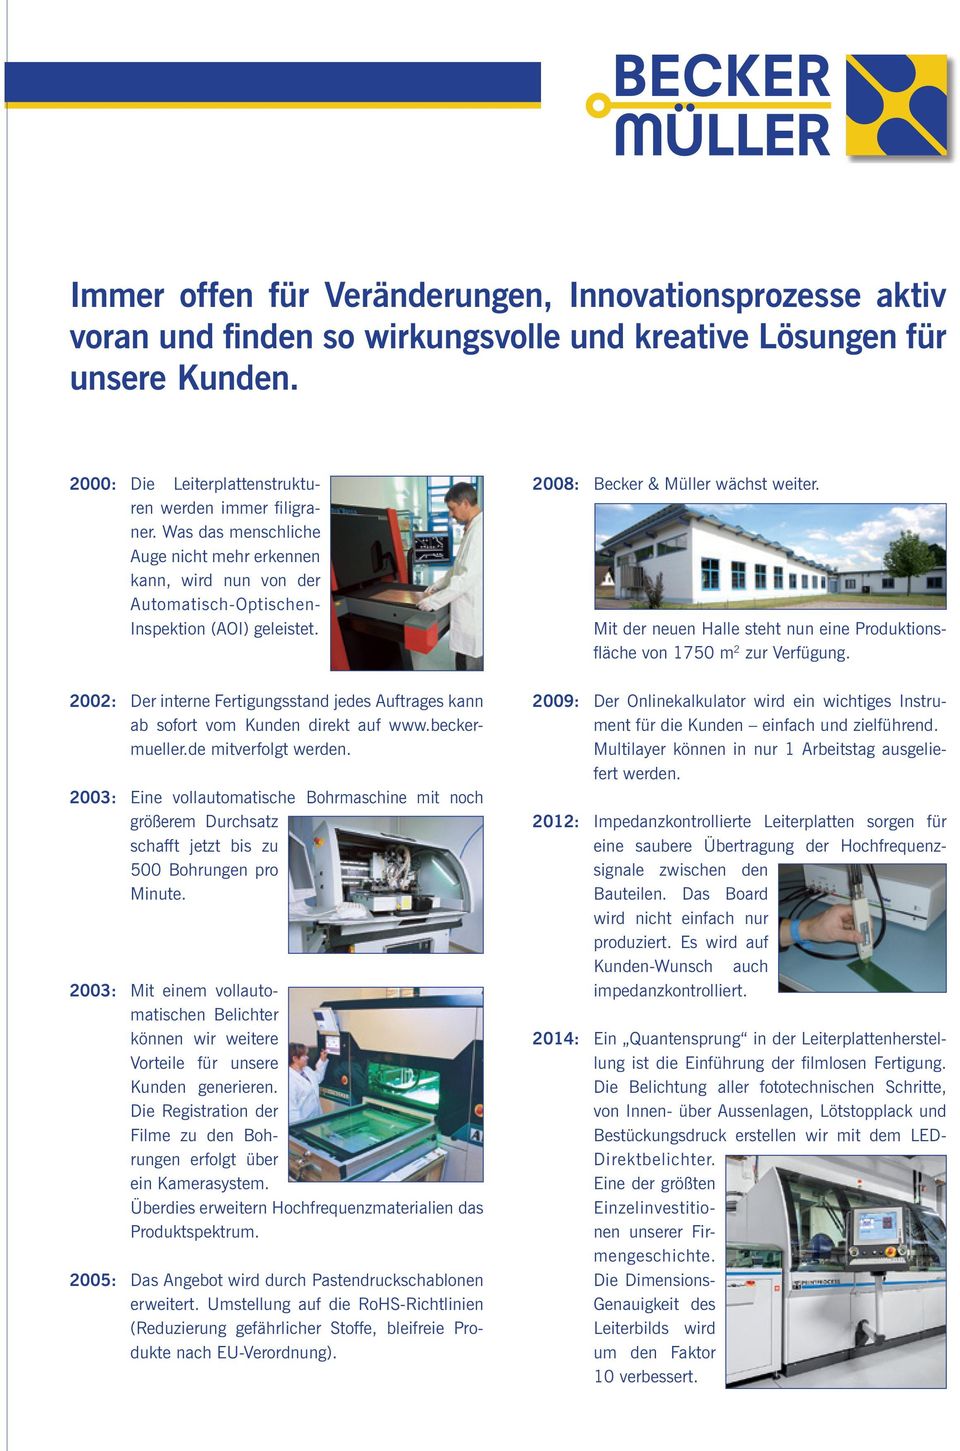 2002: Der interne Fertigungsstand jedes Auftrages kann ab sofort vom Kunden direkt auf www.beckermueller.de mitverfolgt werden.